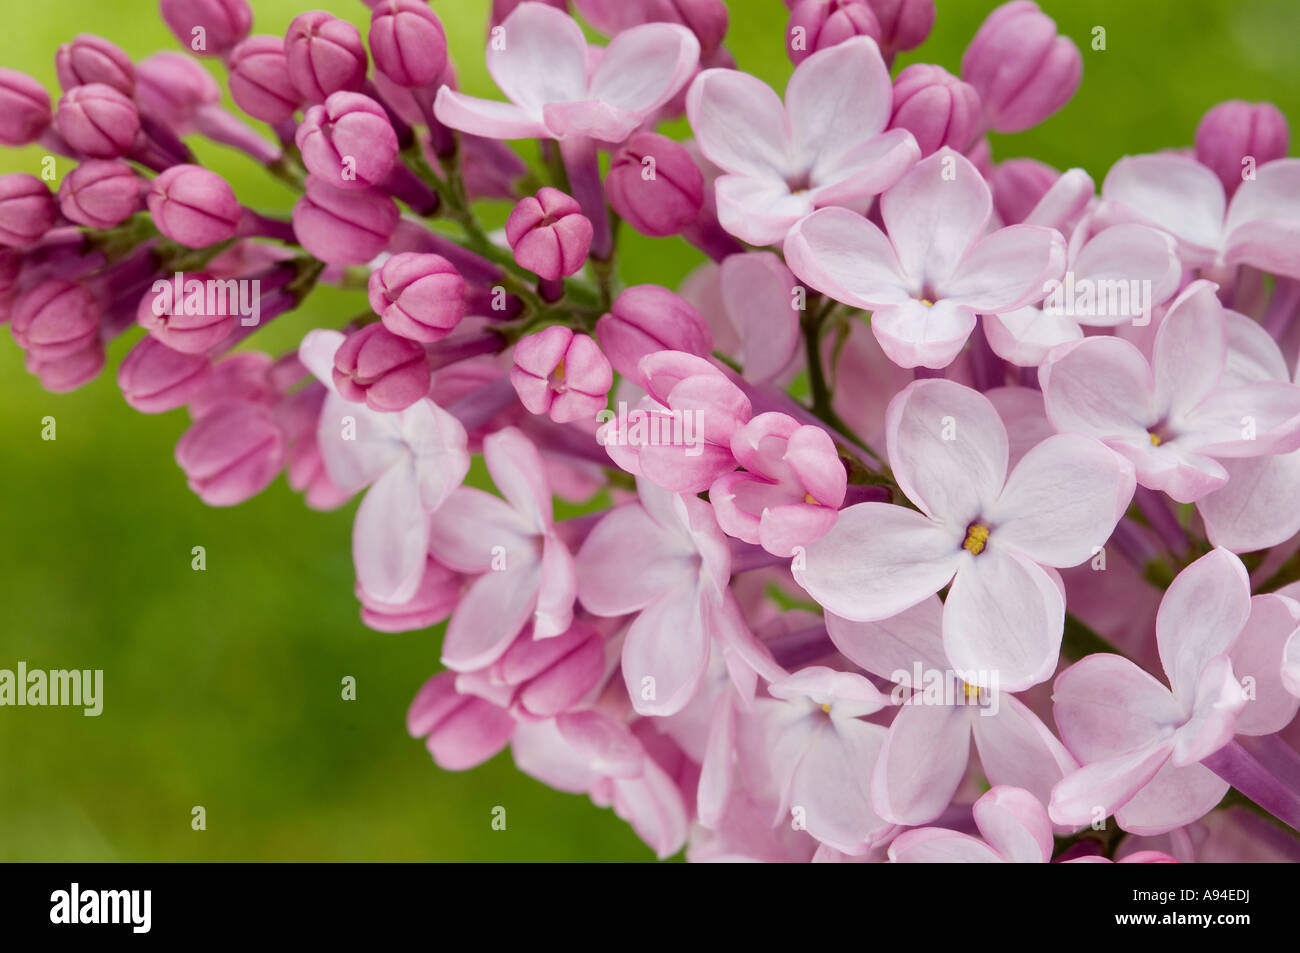 Gros plan de l'arbuste lilas buisson croissance fleurs floraison au printemps syringa vulgaris Angleterre Royaume-Uni Grande-Bretagne Banque D'Images